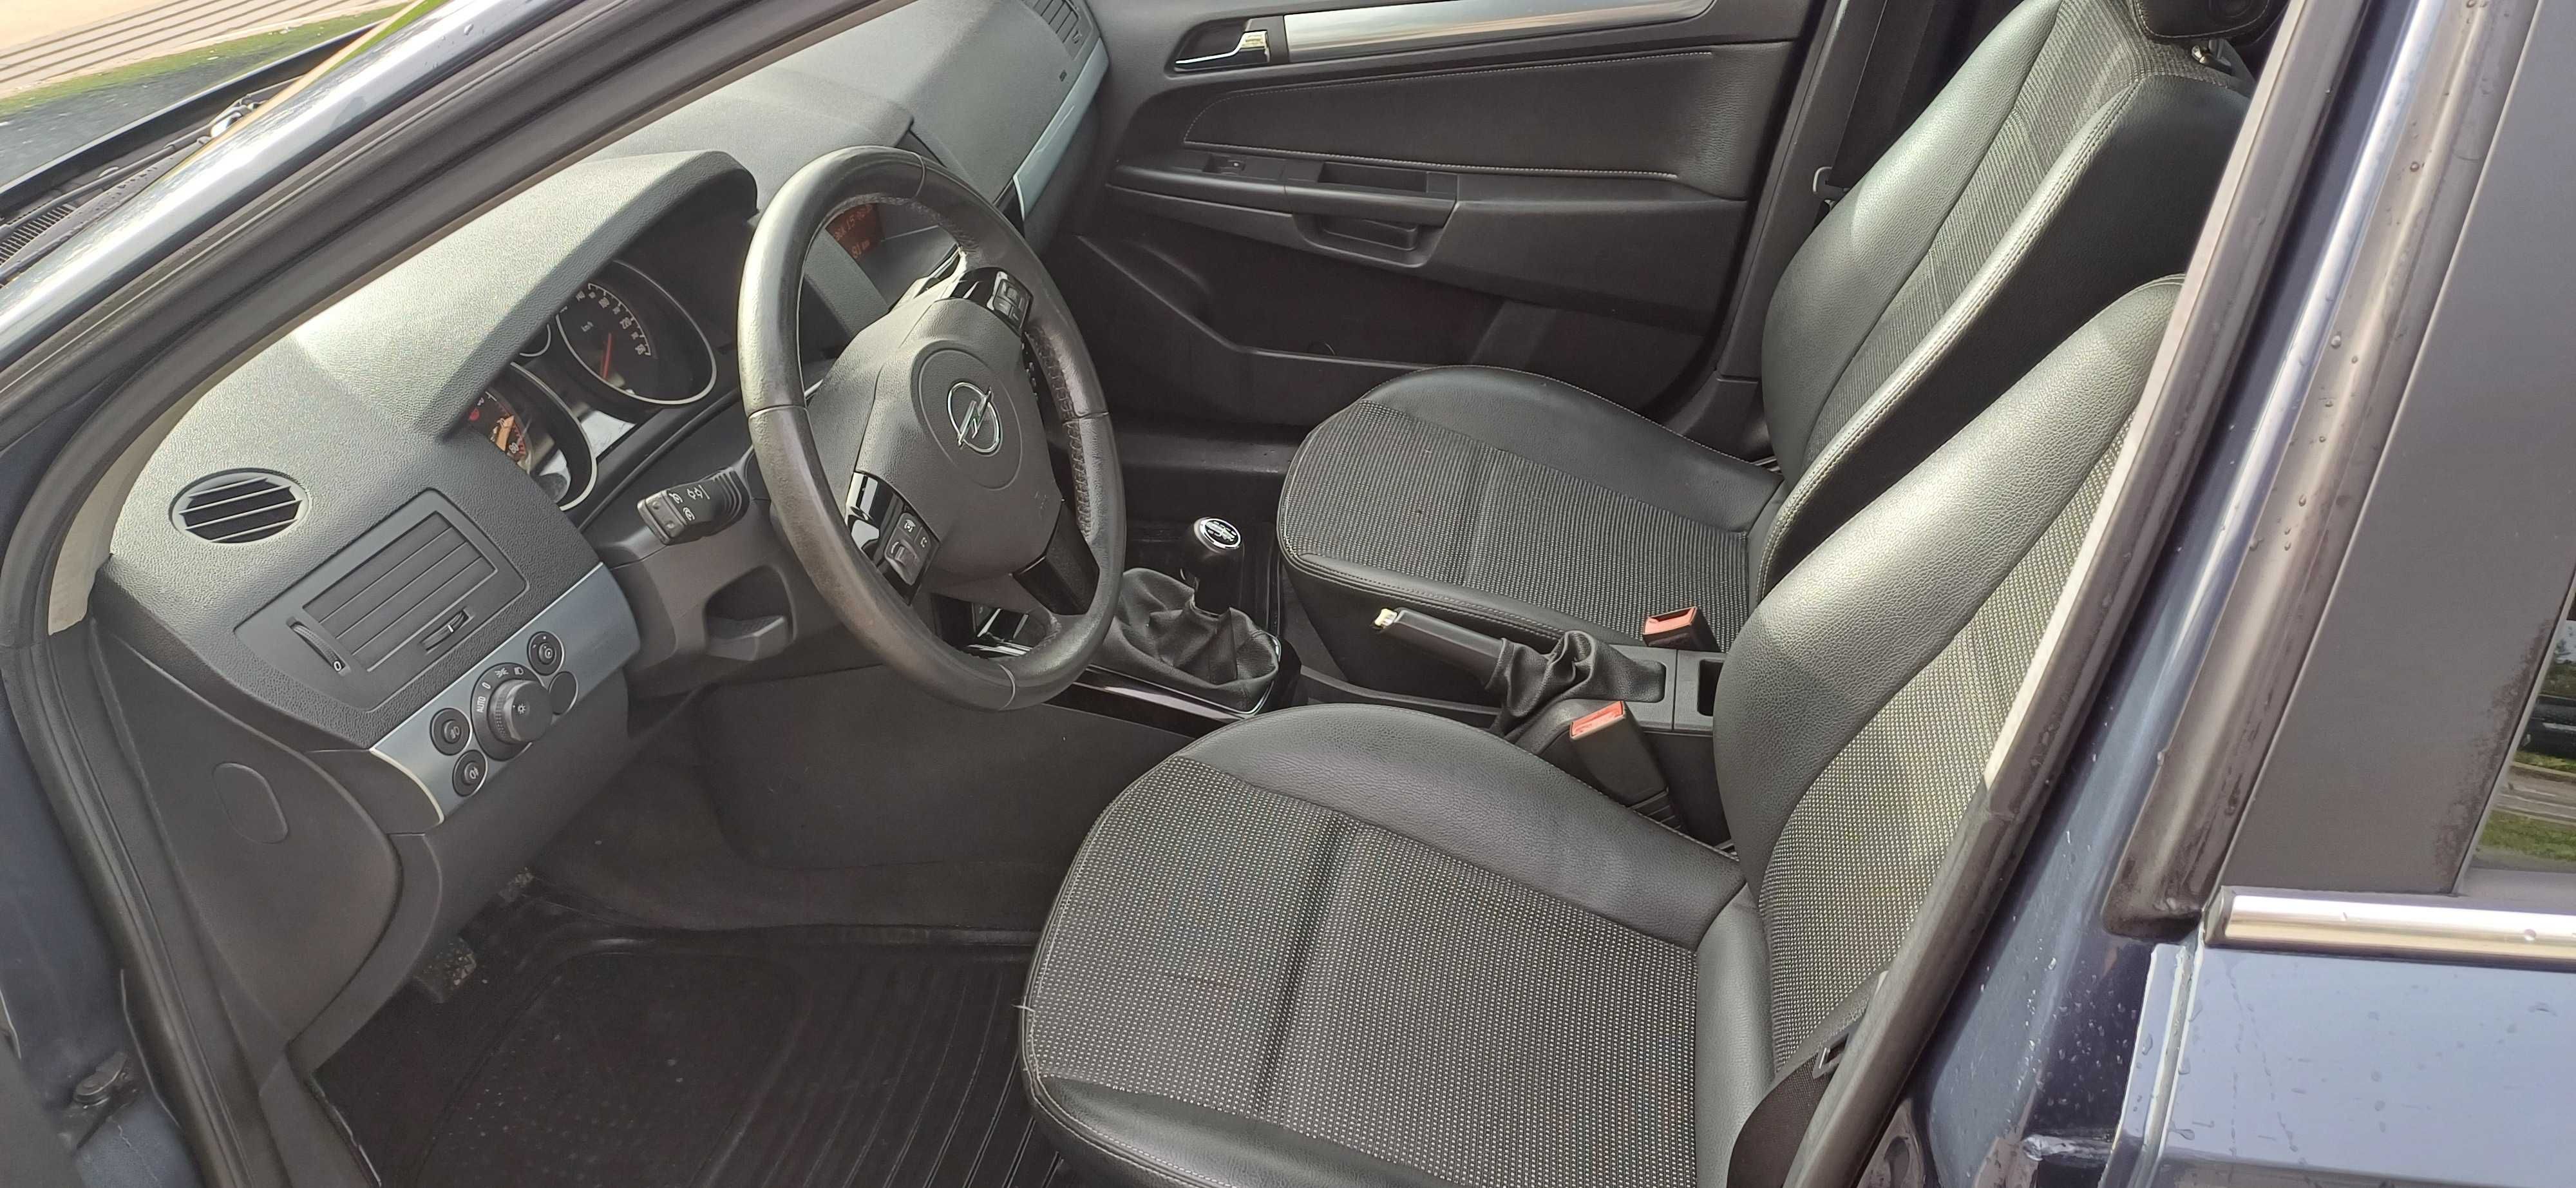 Opel Astra 1.6 Turbo Gasolina C/ Garantia até 2025